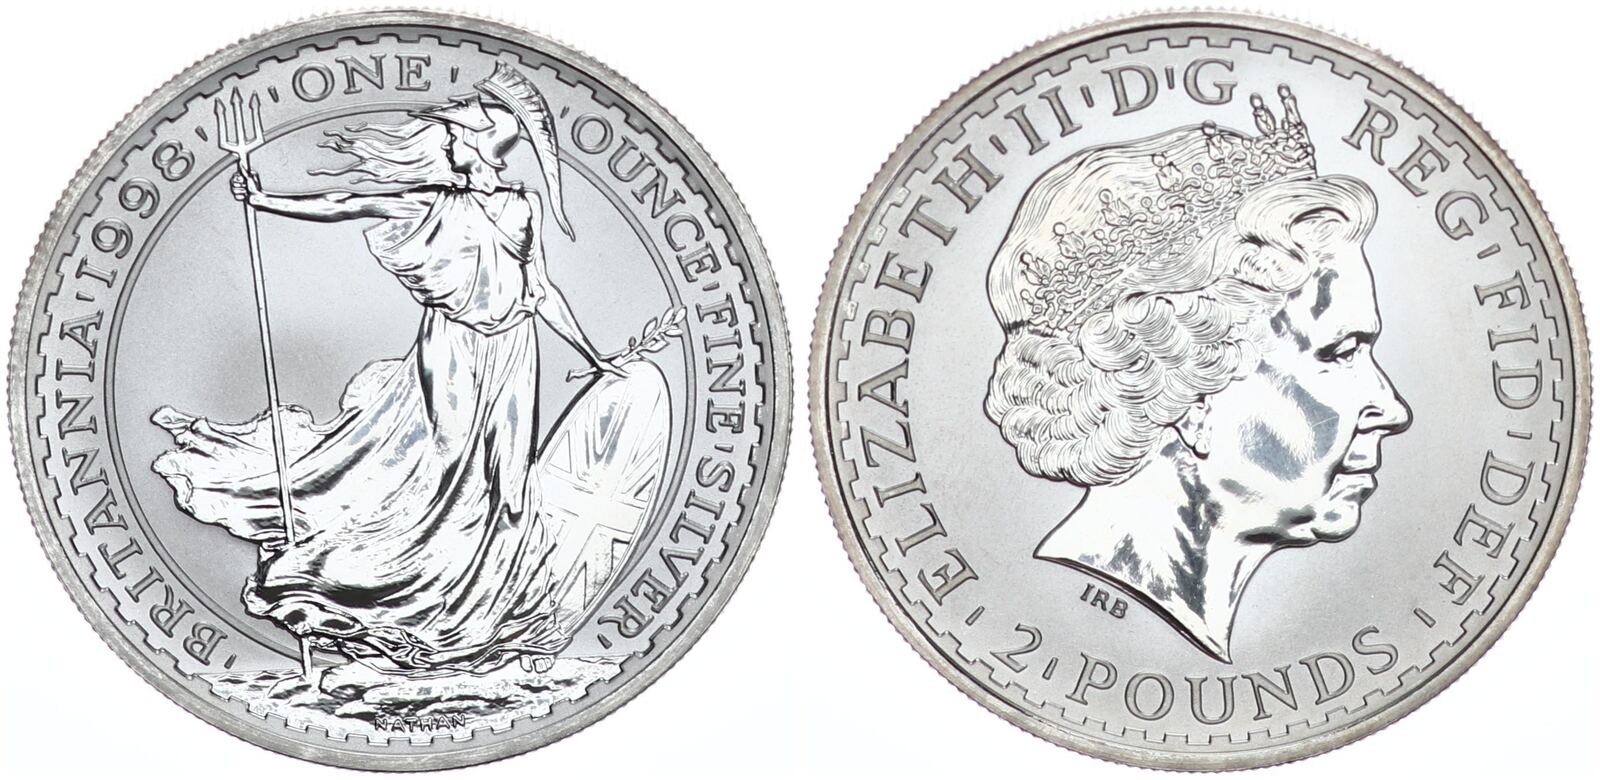 GB - Great Britain - England 2 Pounds 1998 2 Pfund Britannia 1